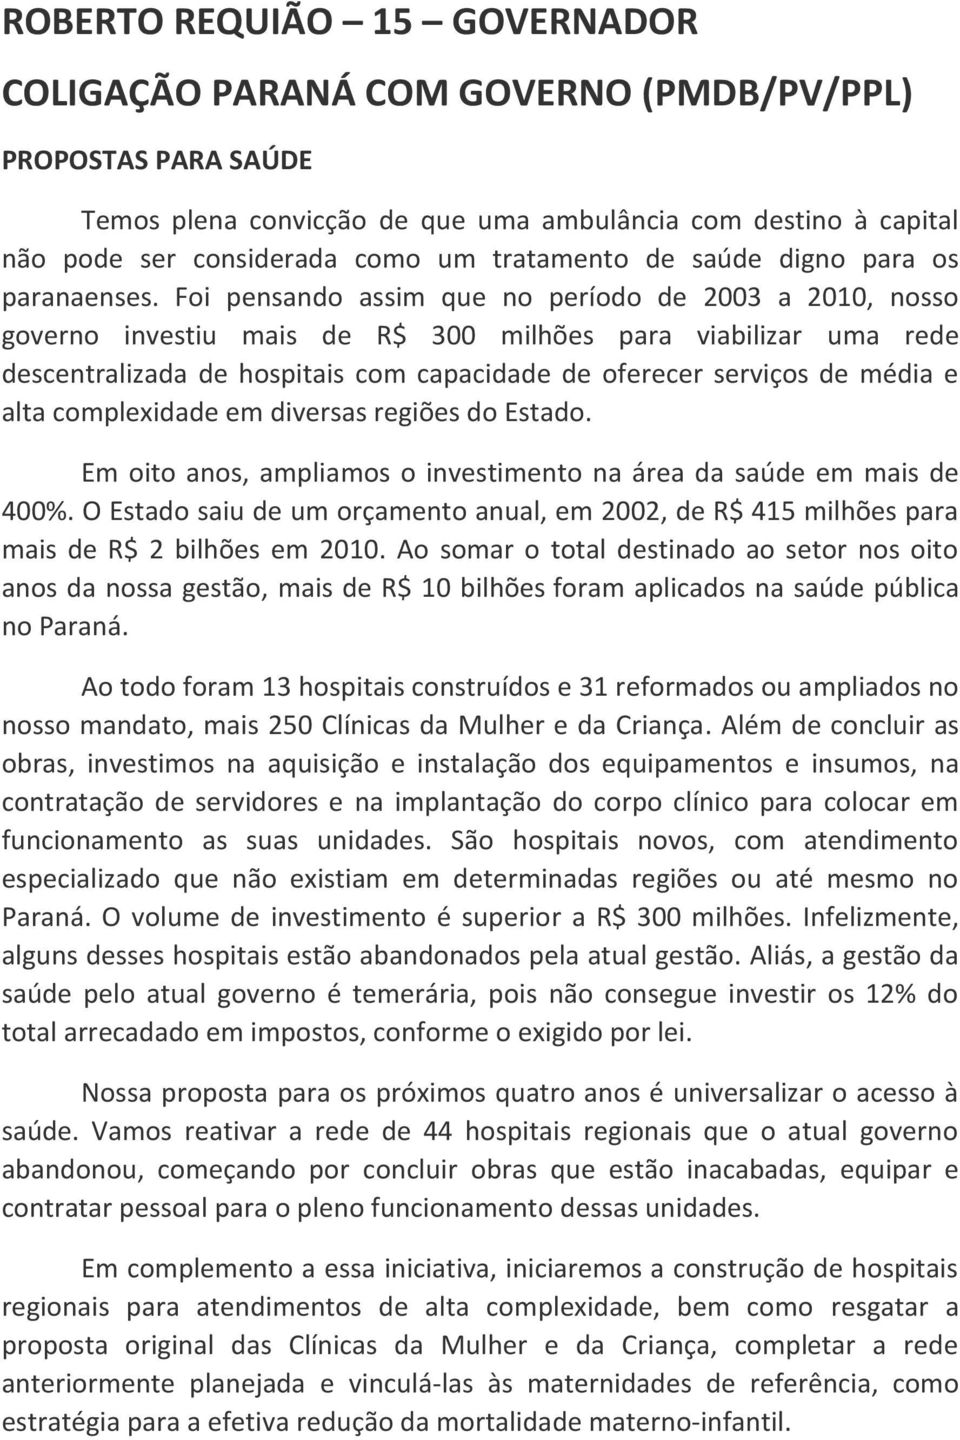 Foi pensando assim que no período de 2003 a 2010, nosso governo investiu mais de R$ 300 milhões para viabilizar uma rede descentralizada de hospitais com capacidade de oferecer serviços de média e